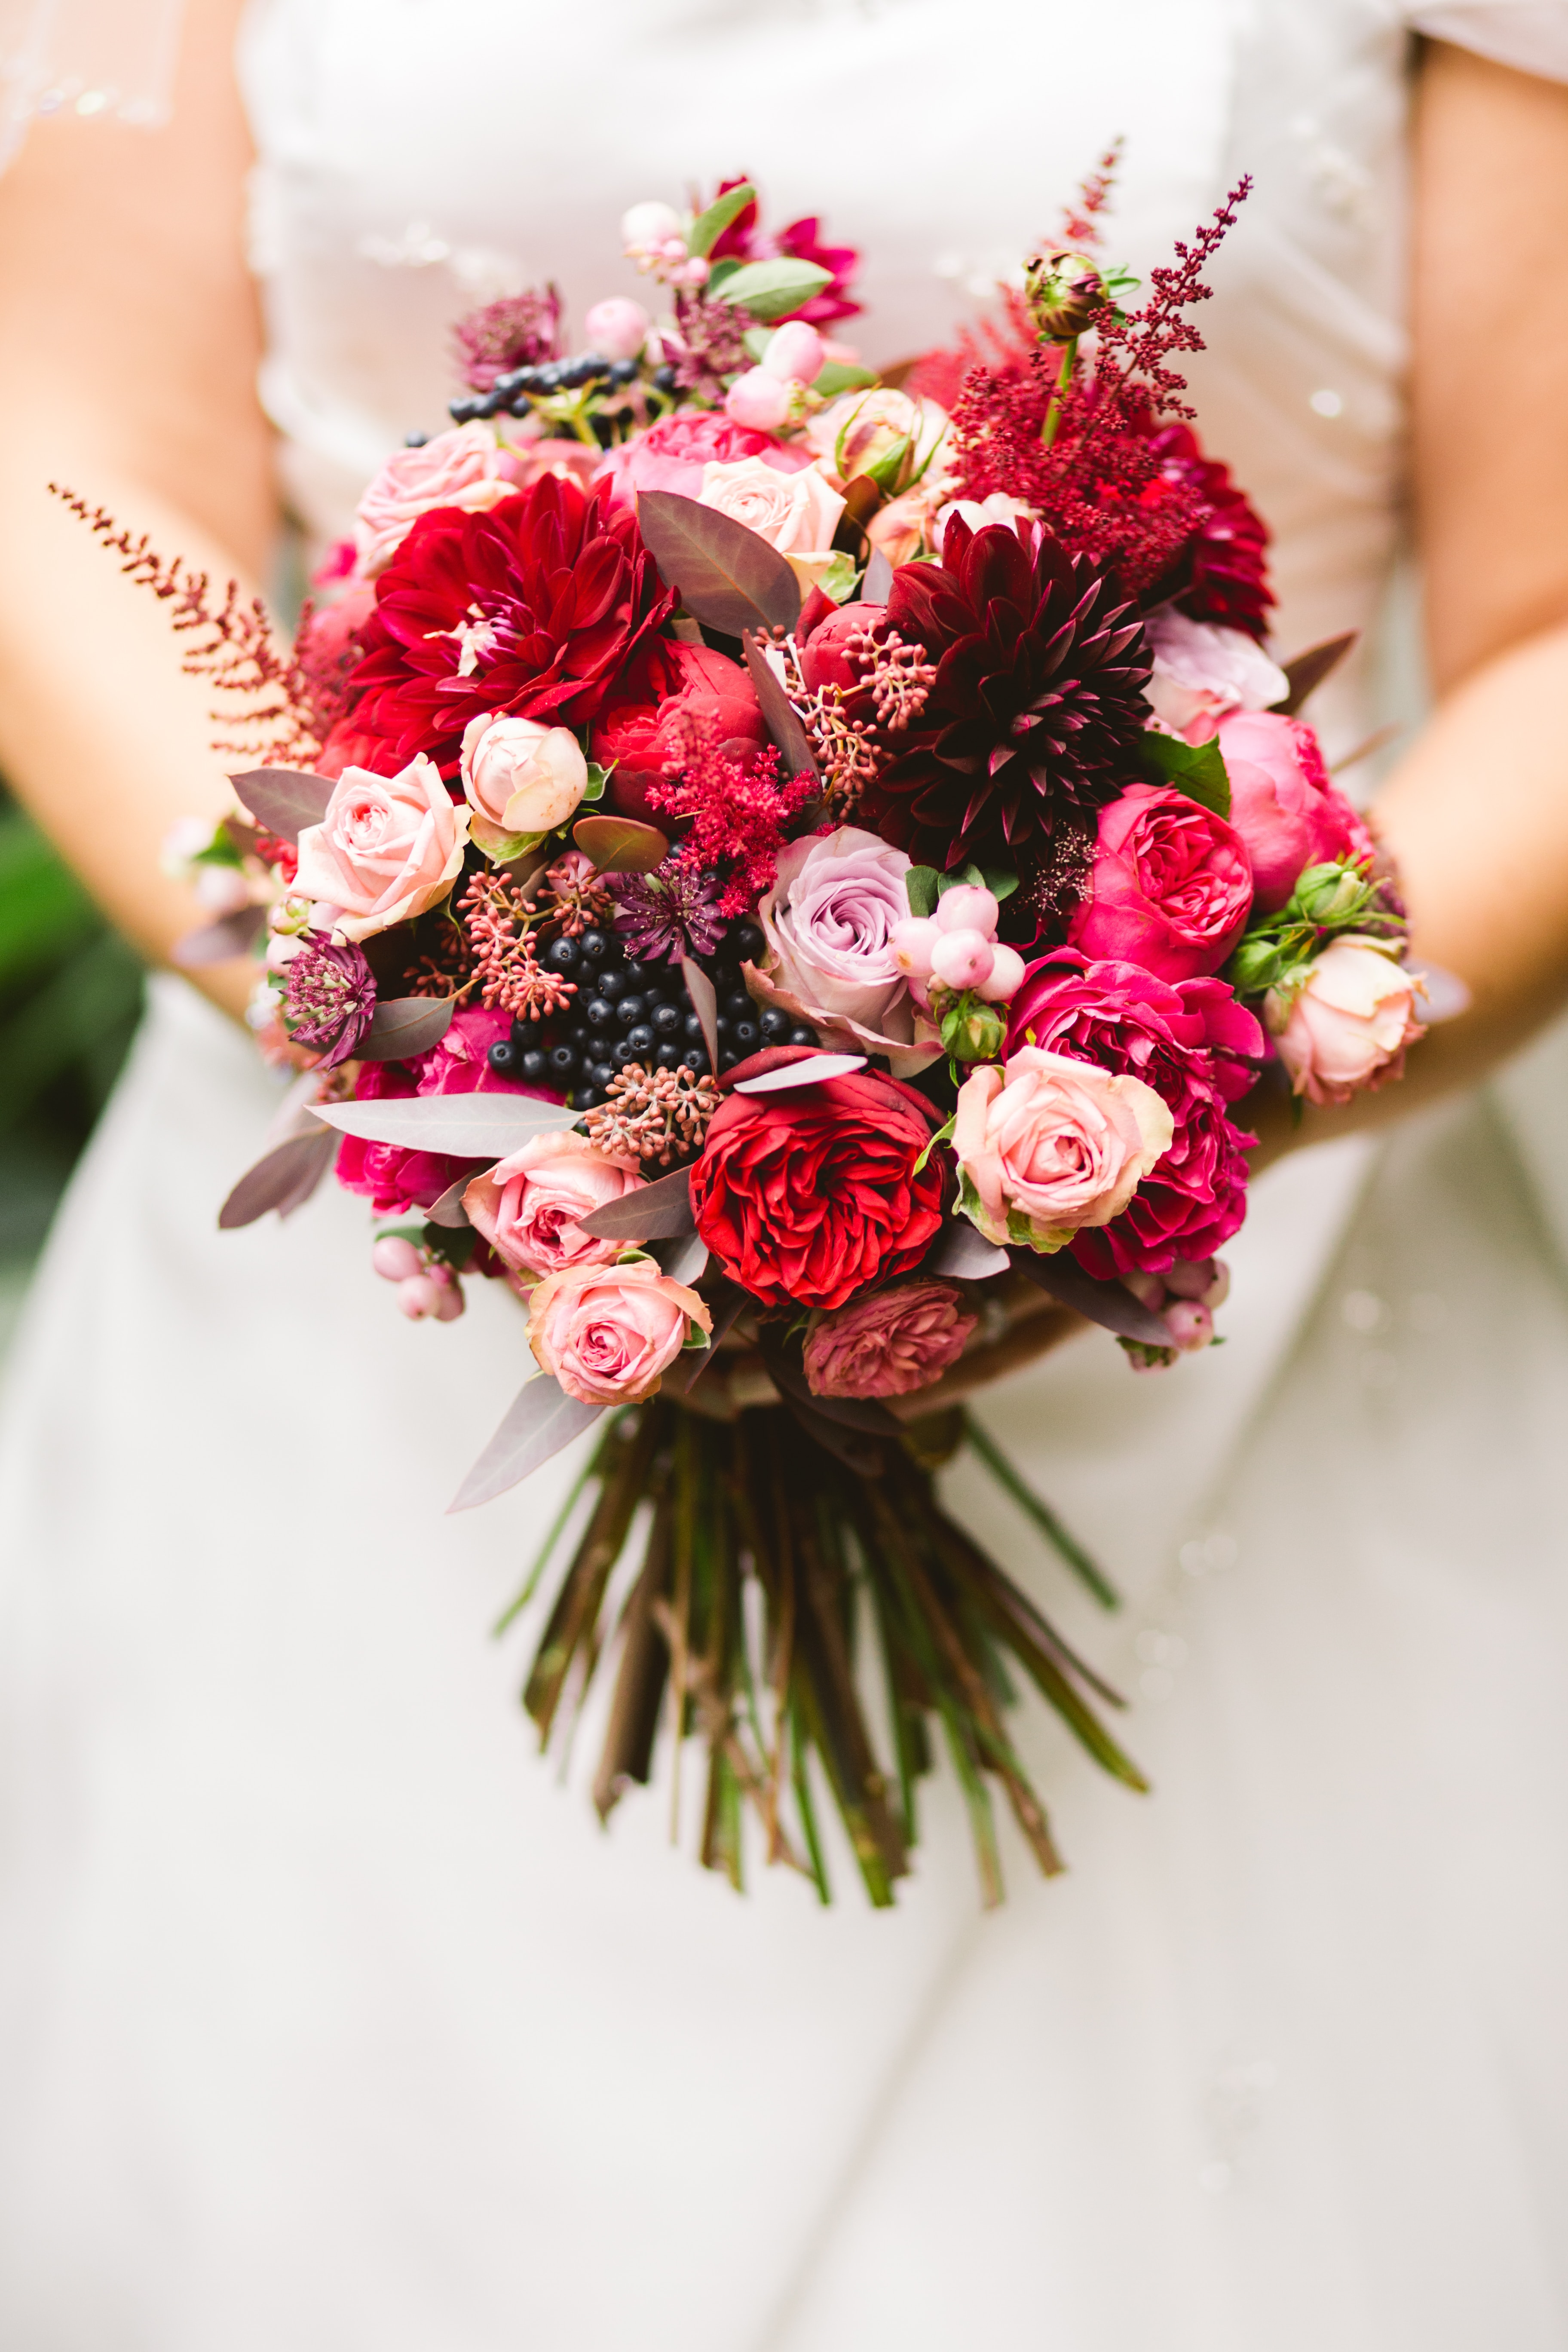 Eine Braut hält einen Strauß roter und rosa Blumen.